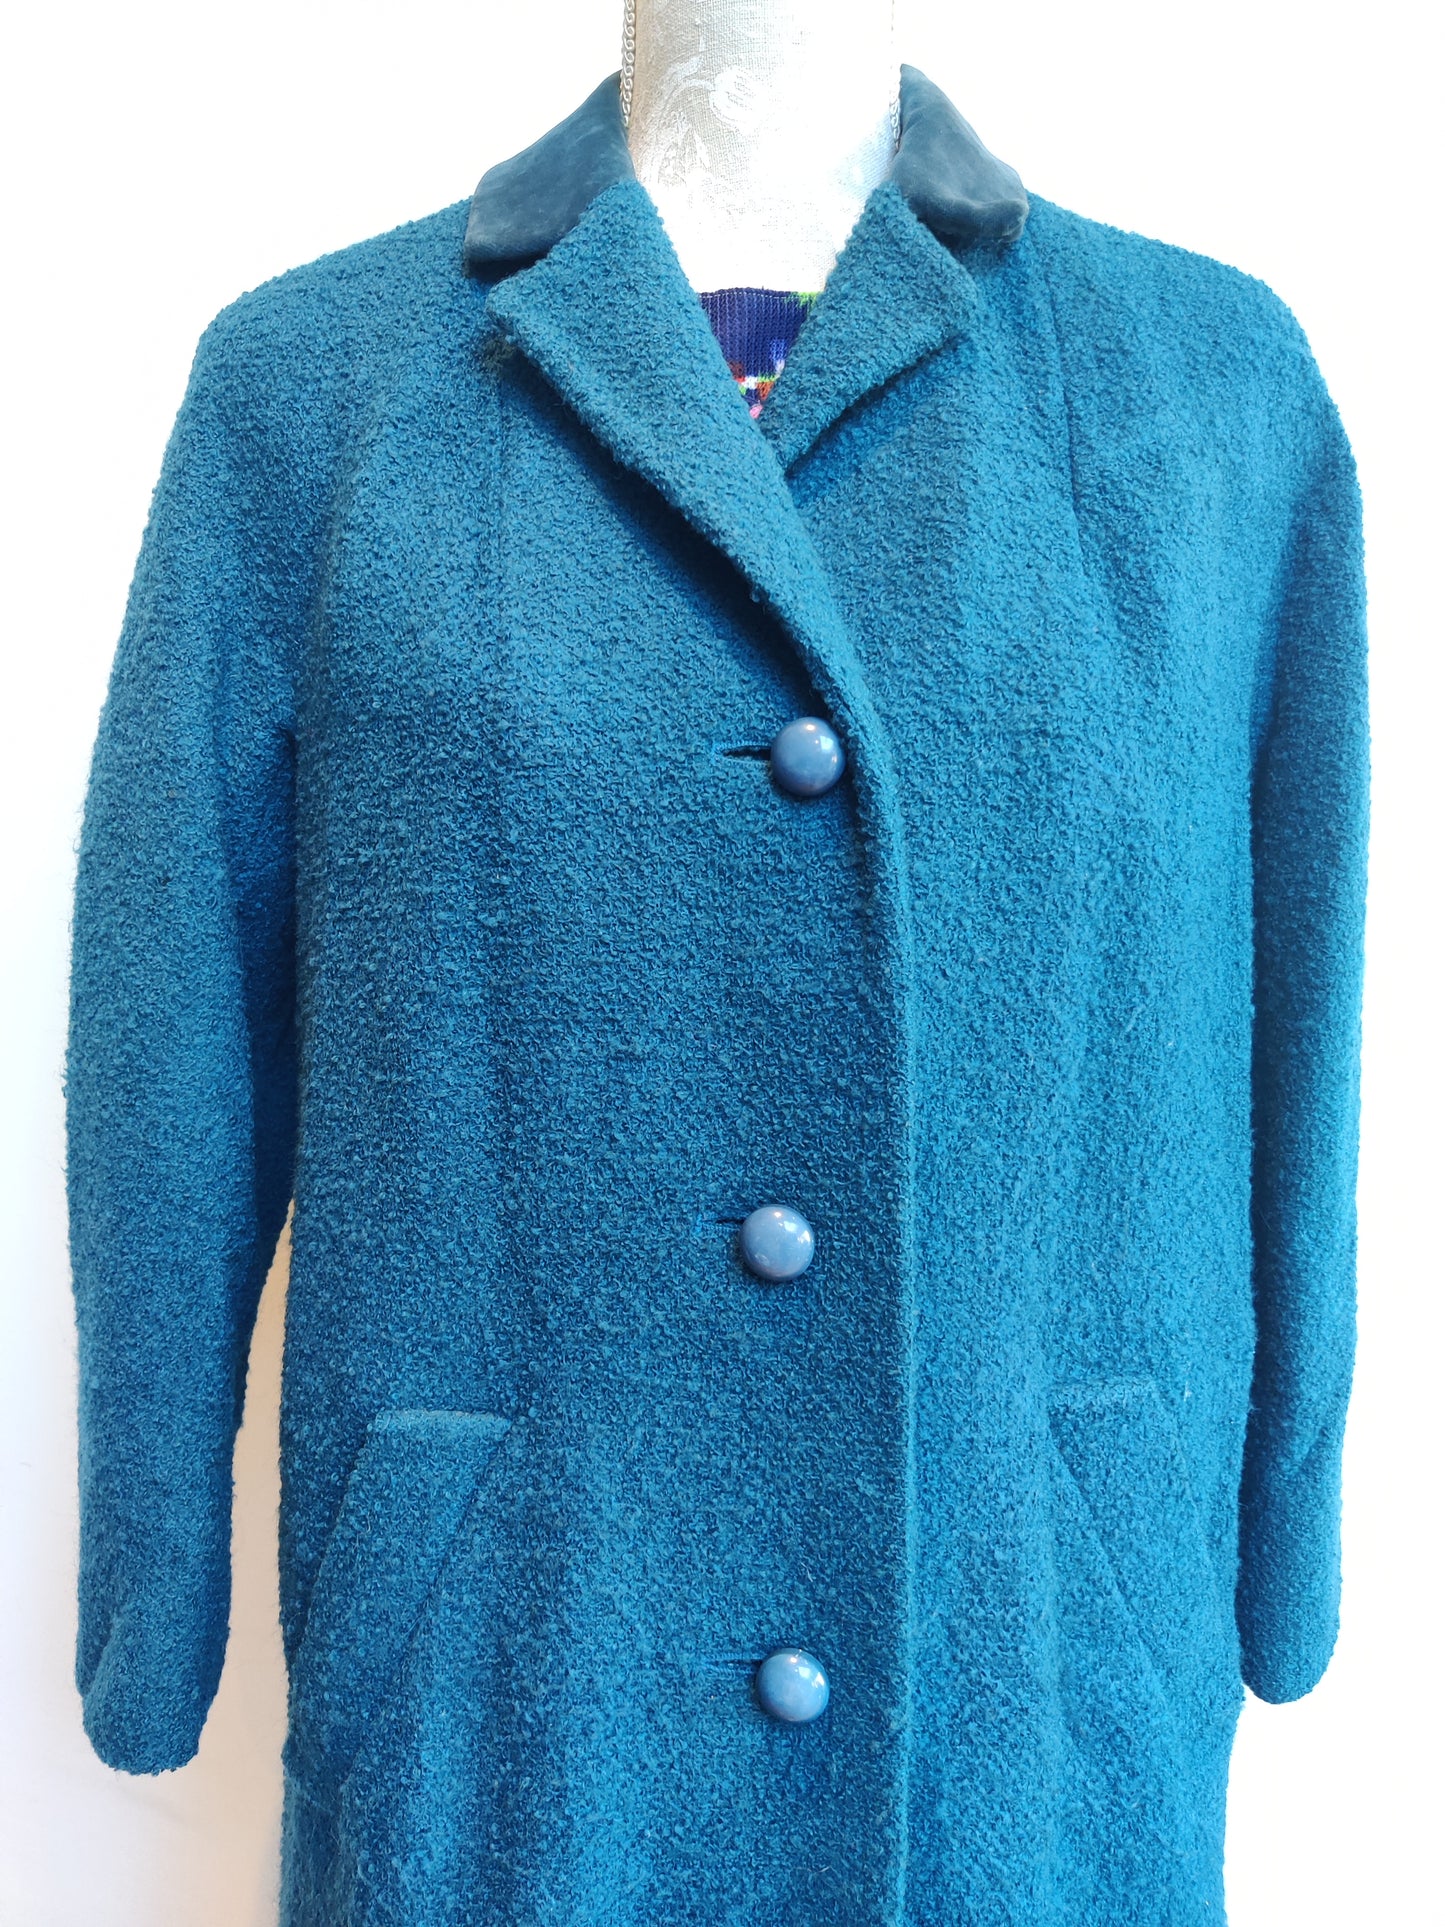 Stunning 1950s Aquascutum coat in blue wool with velvet collar.